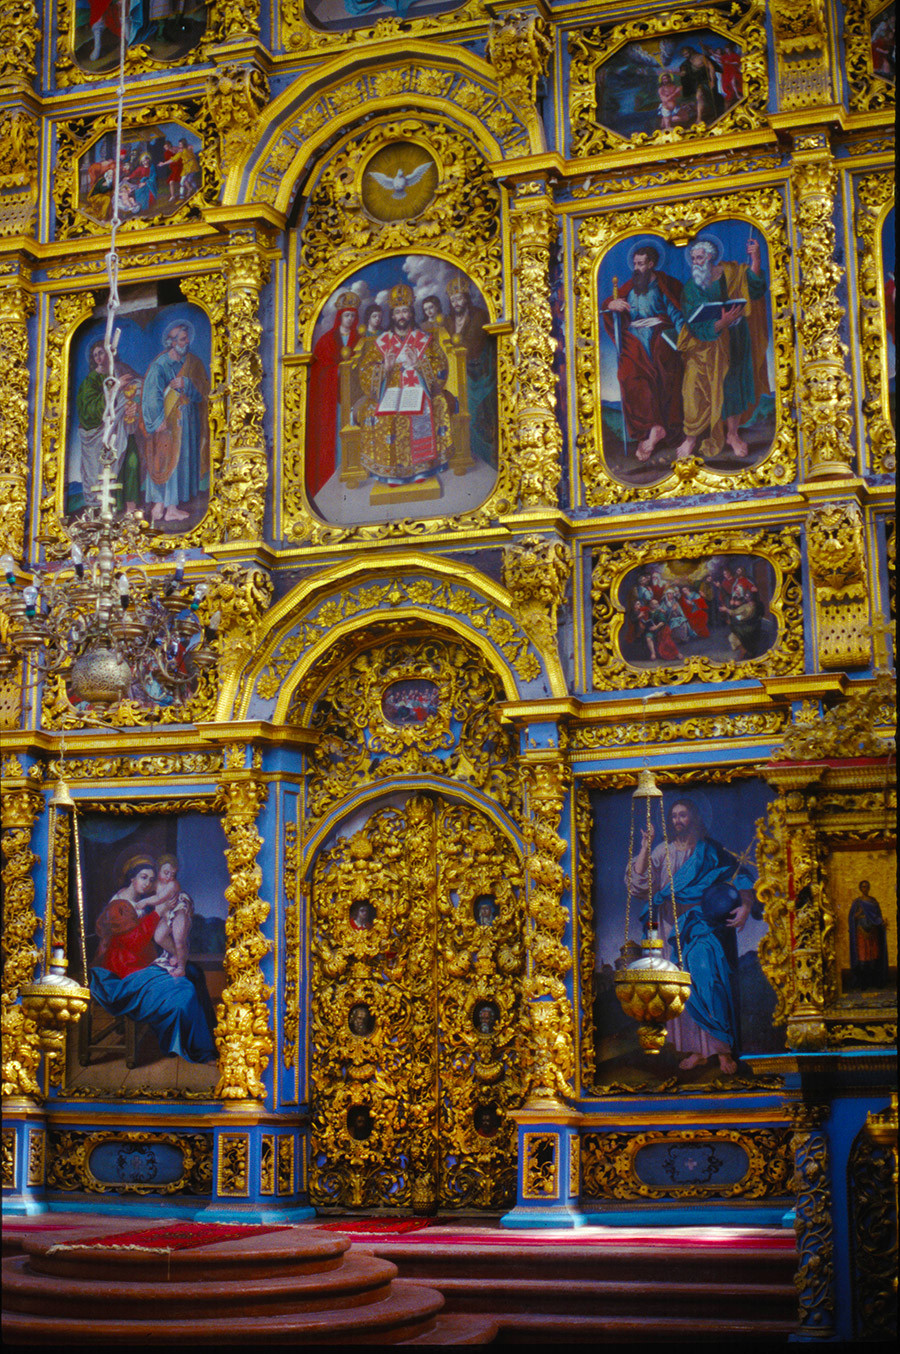 Cathédrale de la Présentation. Iconostase avec Porte Royale. 26 juin 1999
